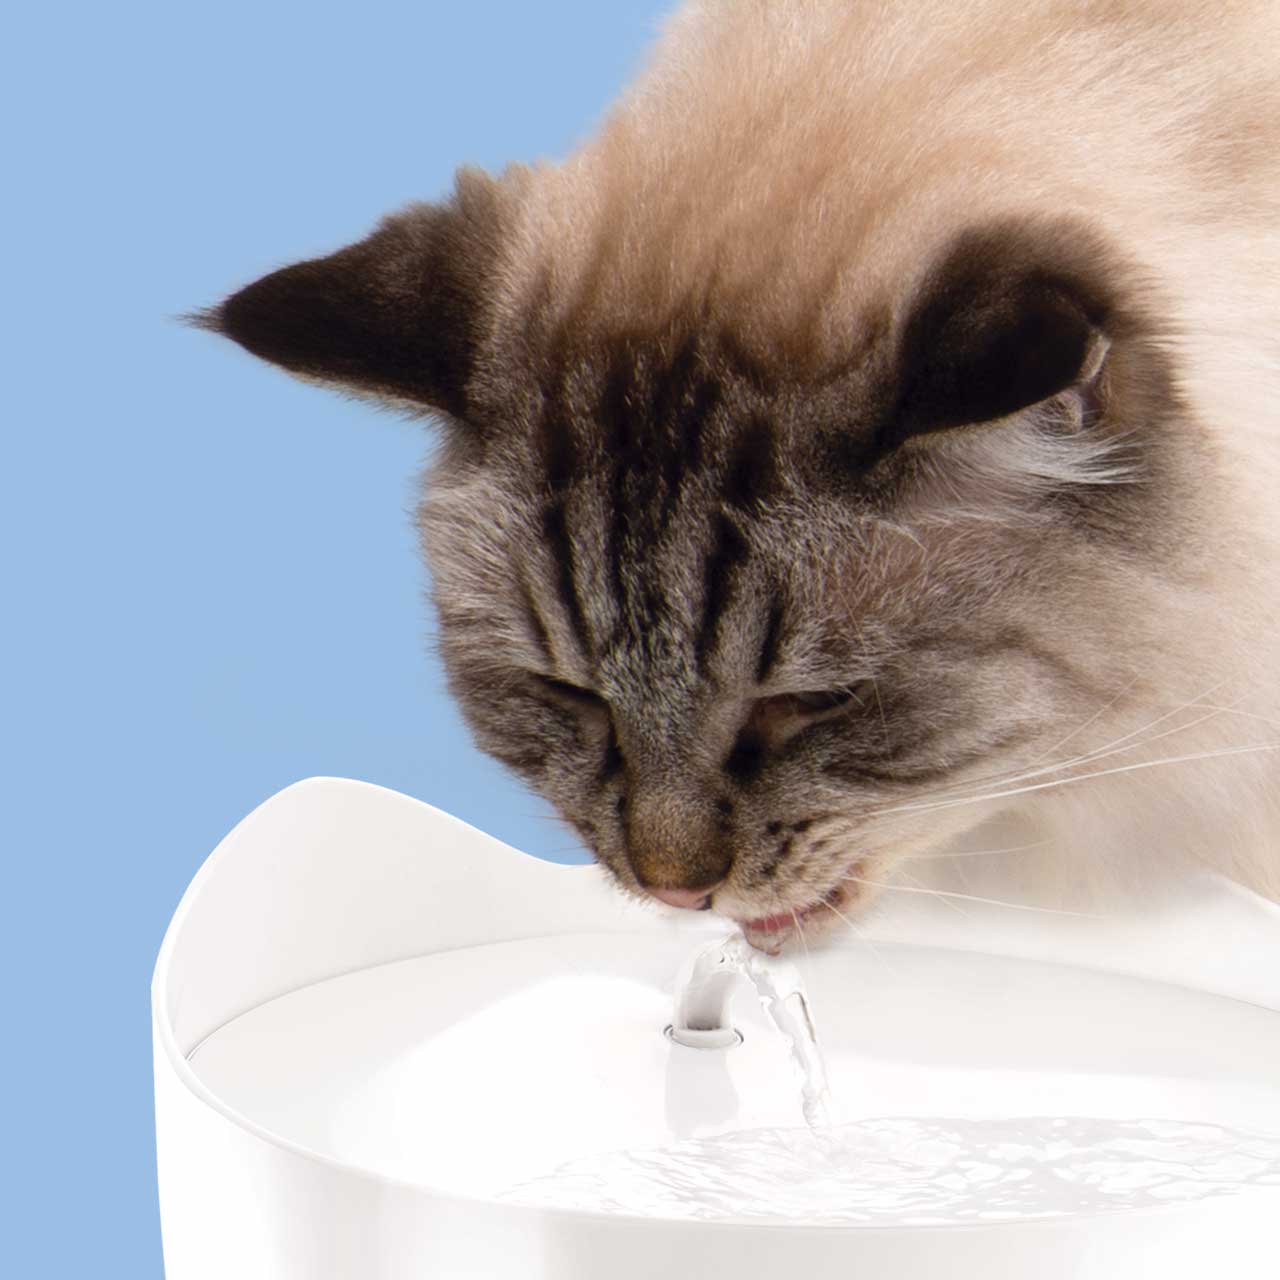 Eine Katze trinkt aus einem PIXI Trinkbrunnen in einer ergonomisch bequemen Haltung